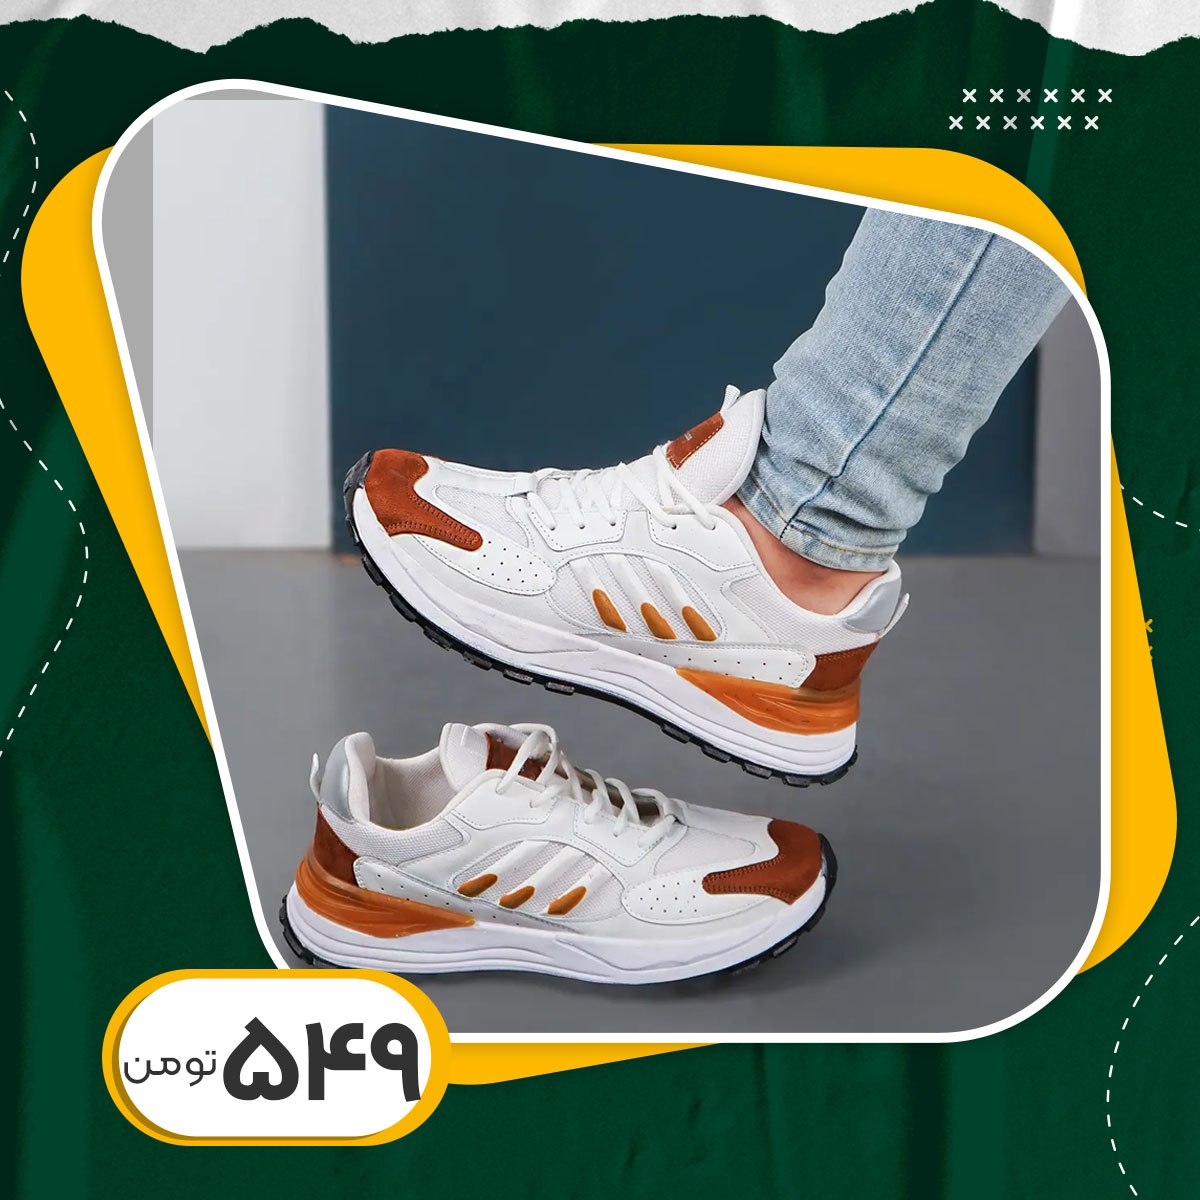 کفش ورزشی مردانه عسلی سفید Adidas مدل Toka